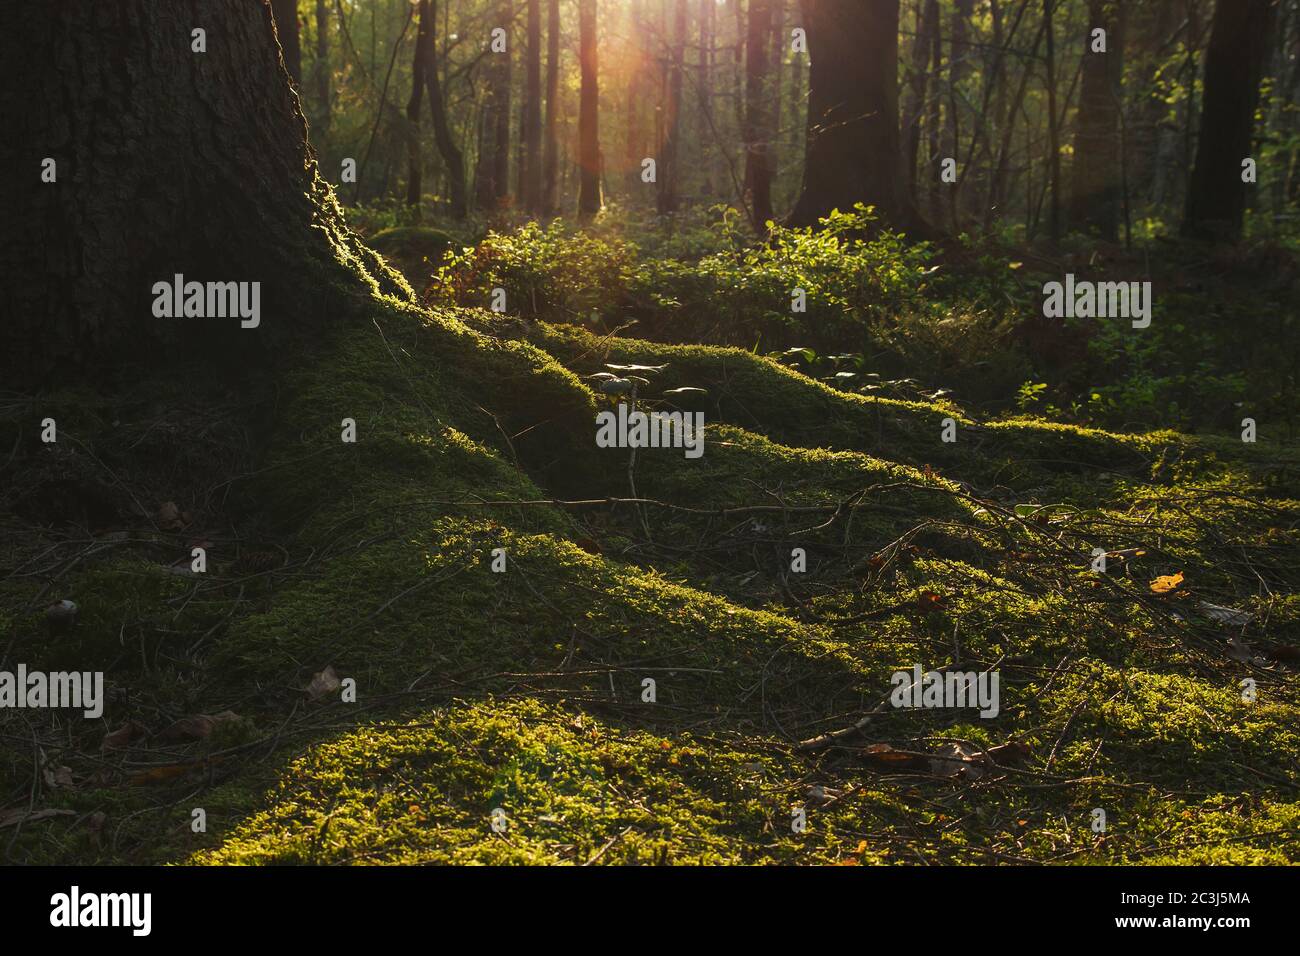 Dettaglio di piede di albero in una foresta verde Foto Stock